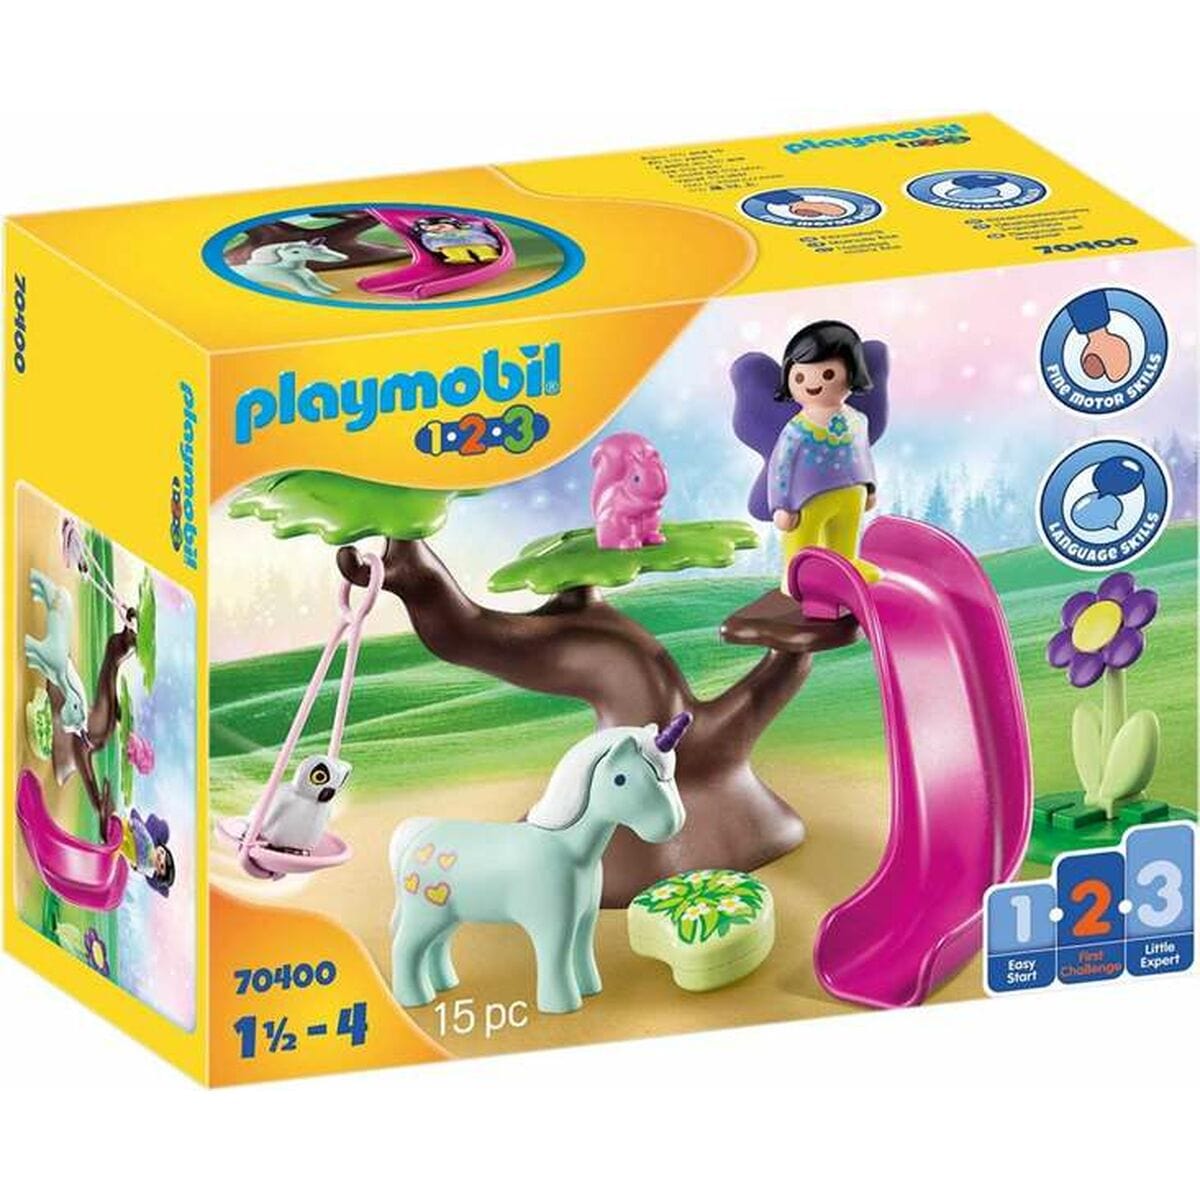 Playmobil Spielzeug | Kostüme > Spielzeug und Spiele > Weiteres spielzeug Playset Playmobil Playground Fee 15 Stücke